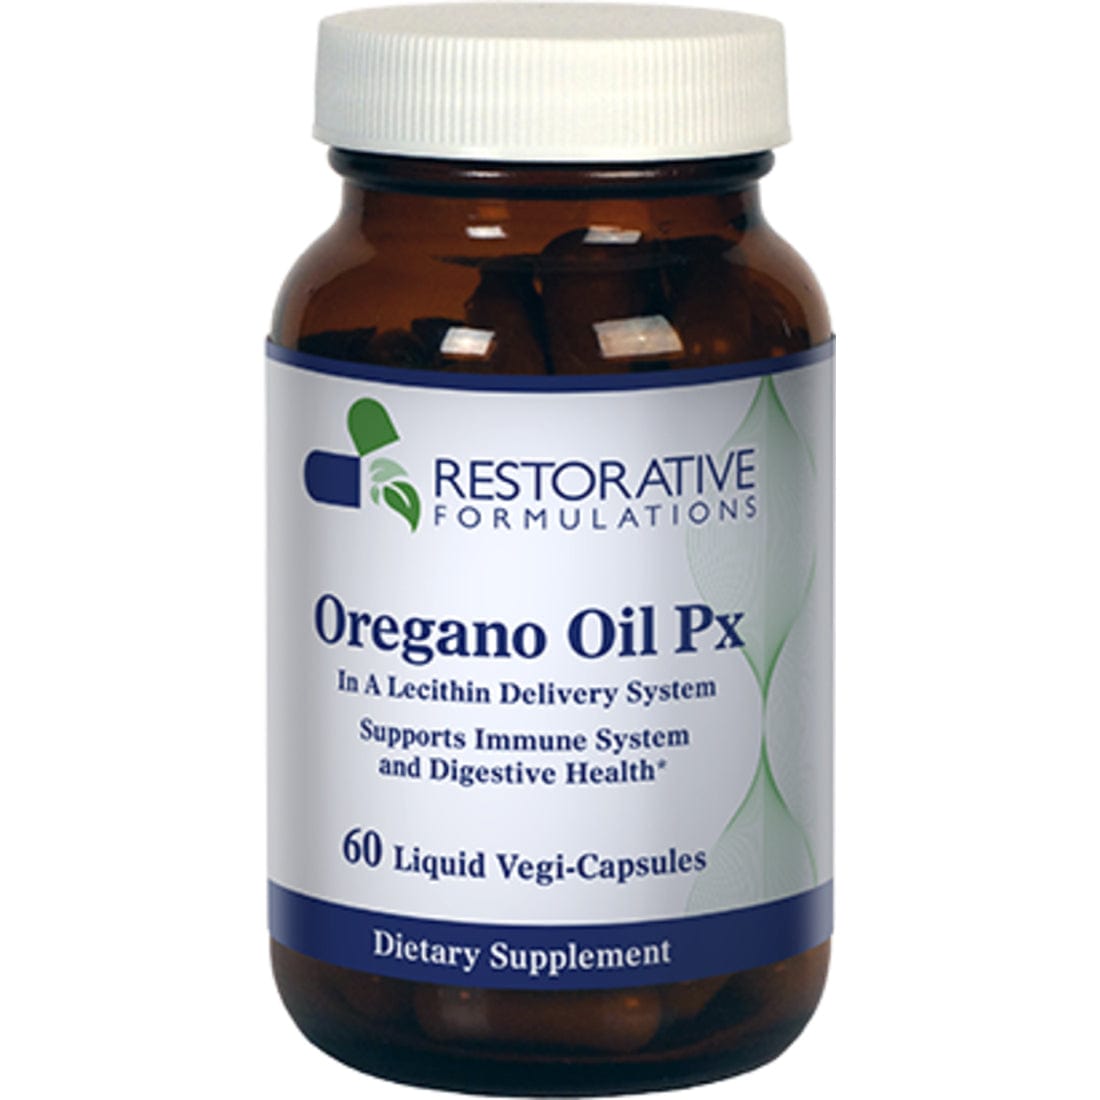 Restorative Formulations Oregano Oil Px, 60 Liquid Vegi-Capsules